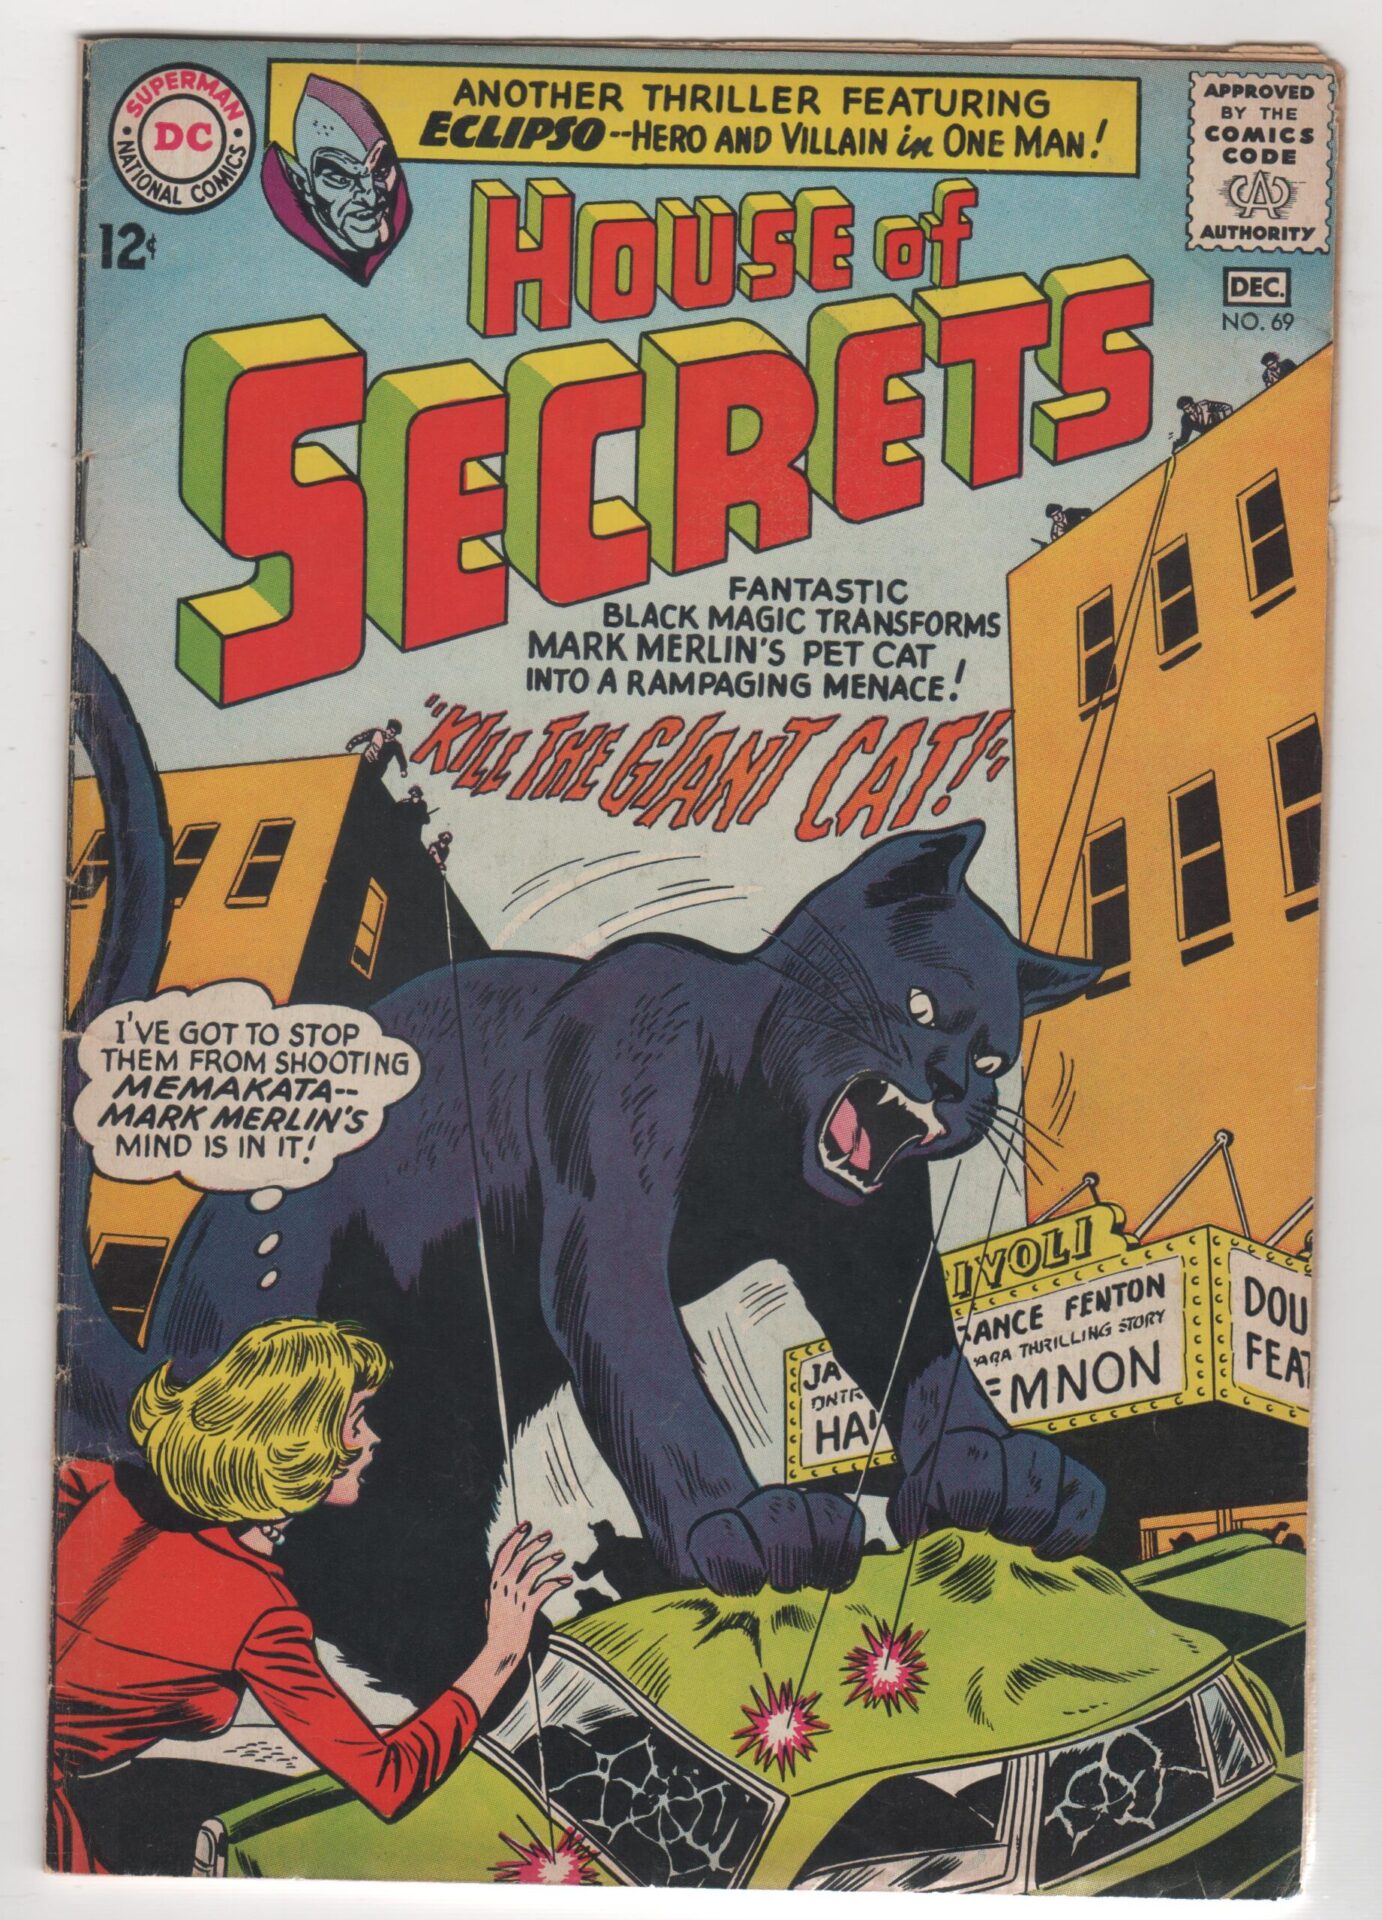 House of Secrets #69 DC Comics 1964